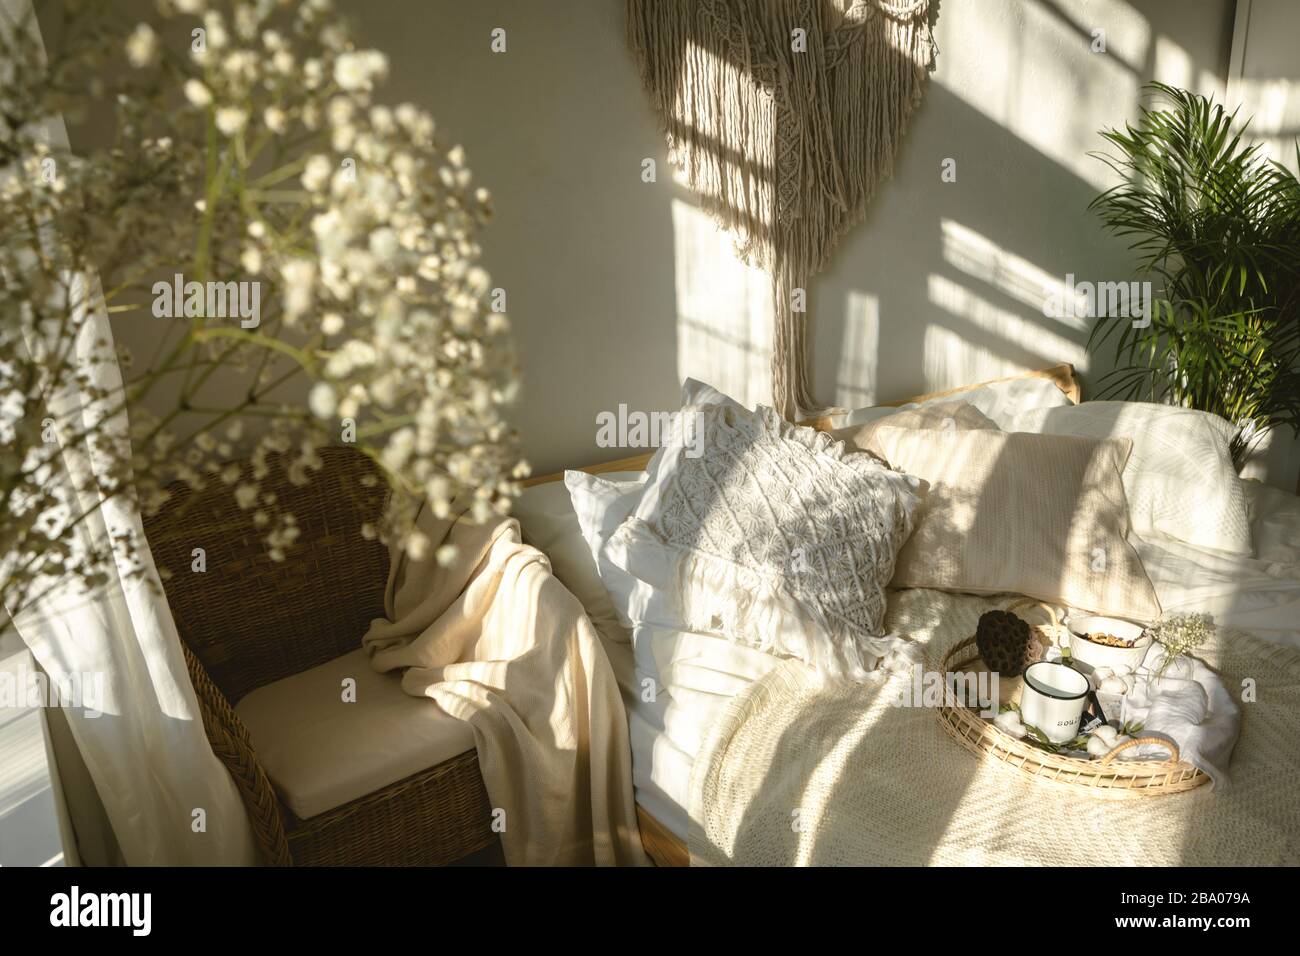 Gemütliches sonniges Schlafzimmer im Boho-Stil mit Licht und Schatten und  einer Nahaufnahme weißer Zigeuner-Blumen. Authentisches, lebendes Interieur  Stockfotografie - Alamy